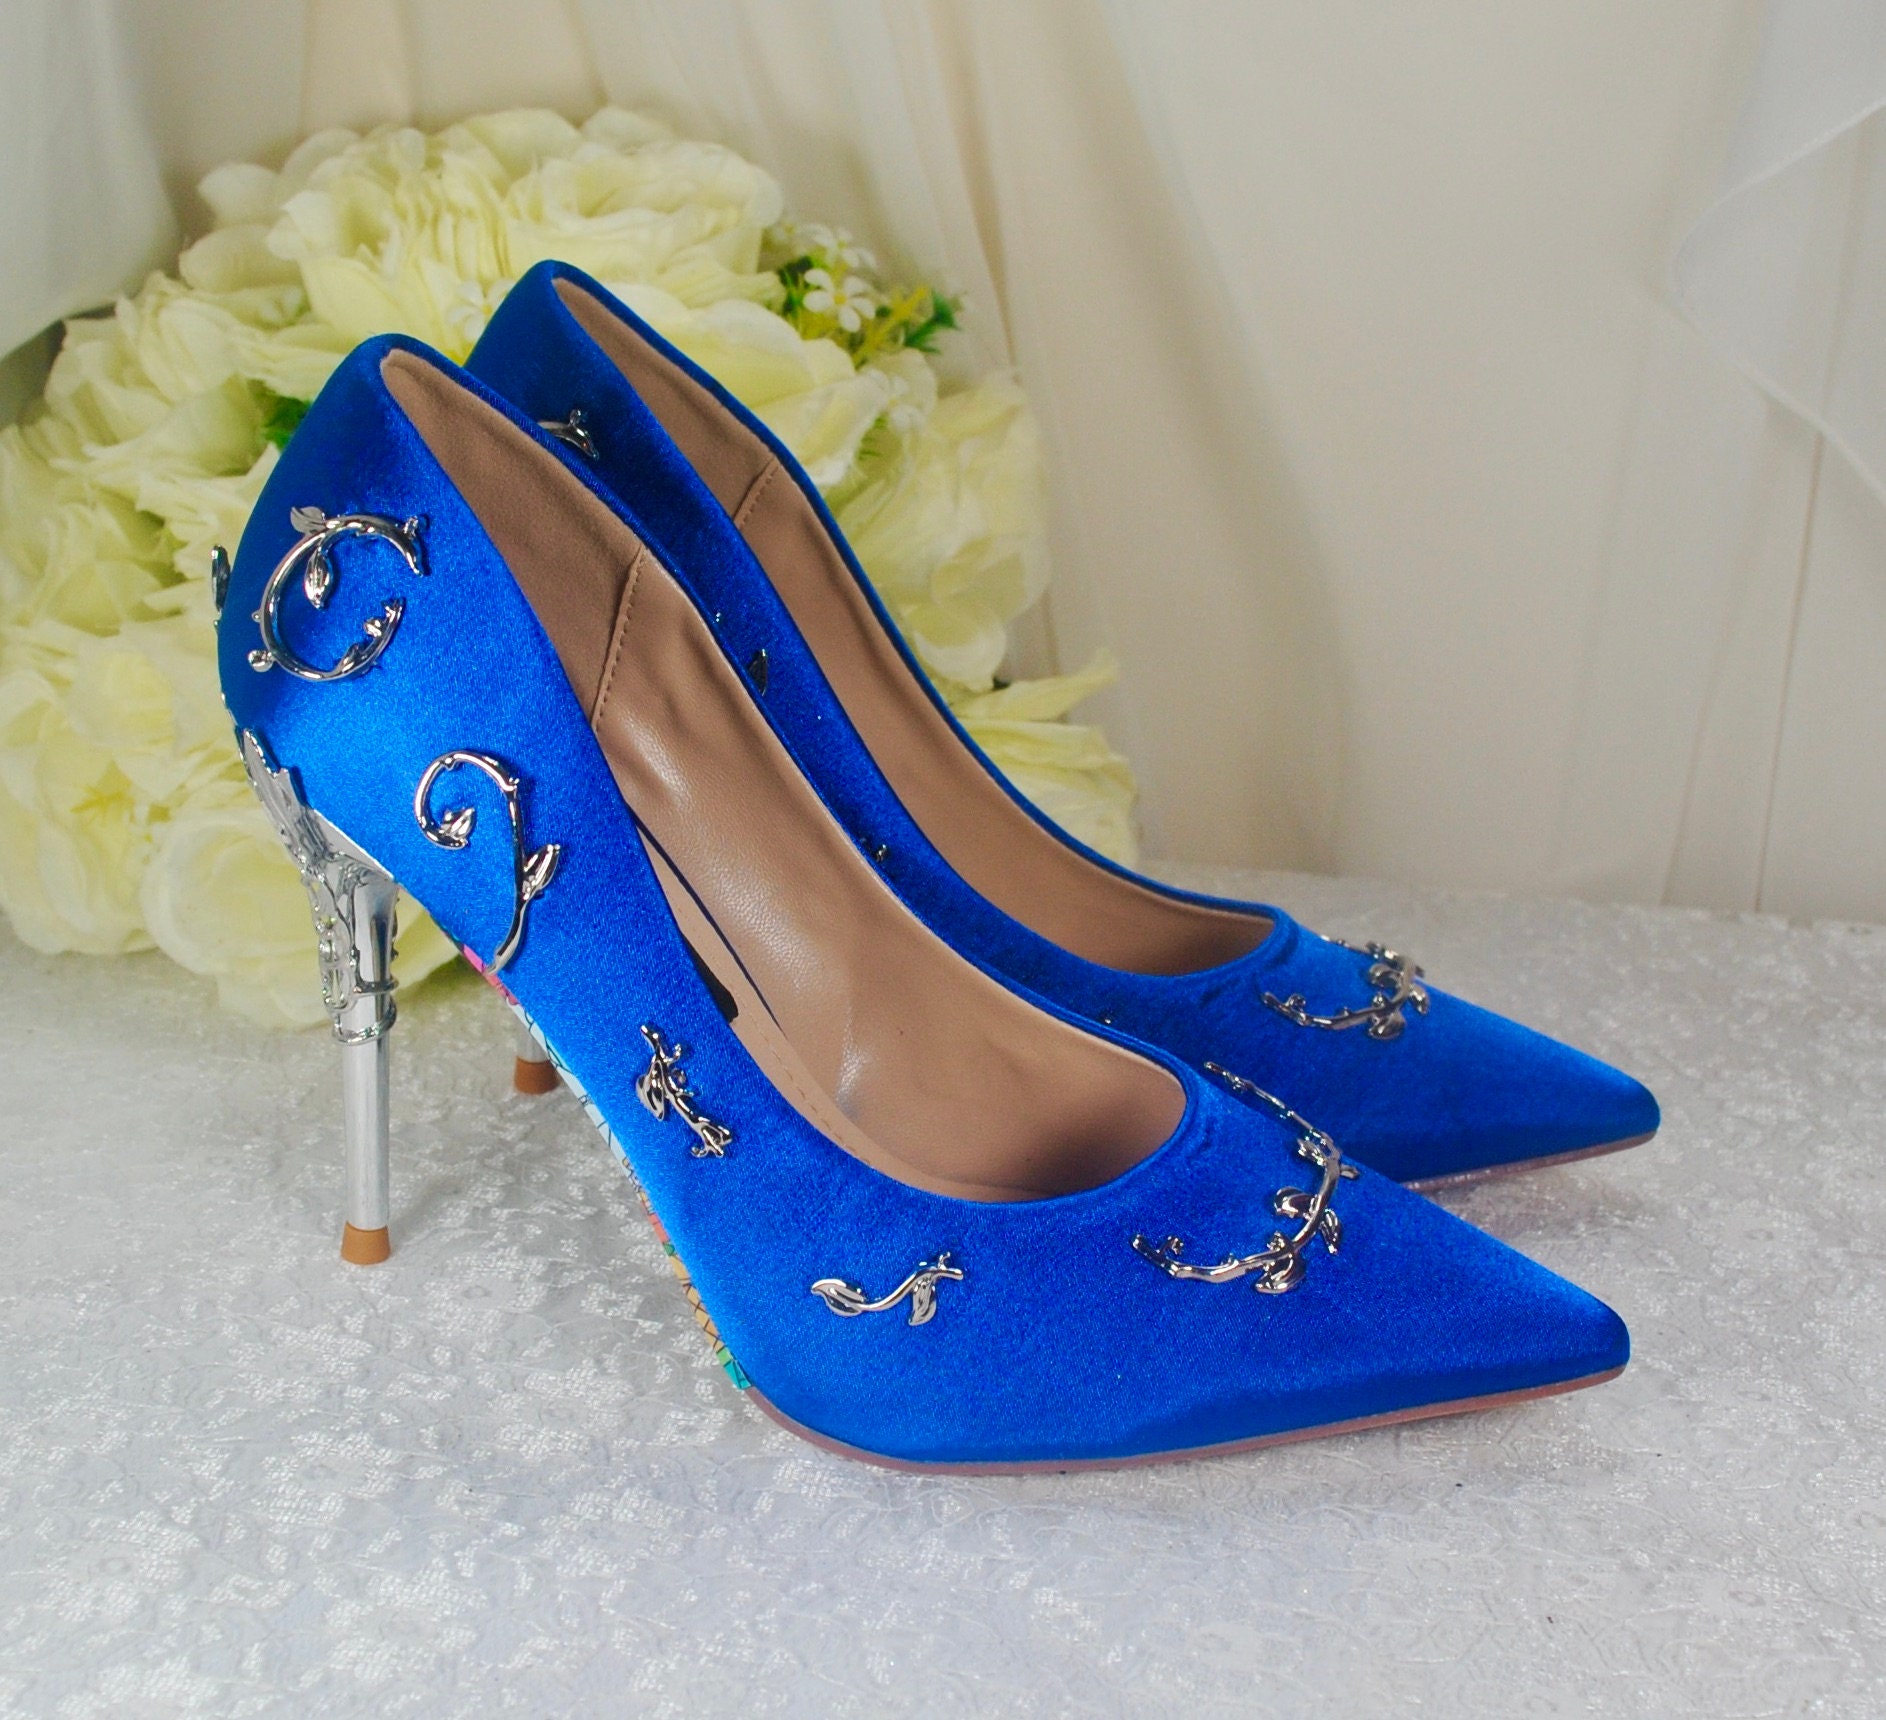 Pale Blue Block Heels, Blue Block Heels, Blue Wedding Shoes, Wedding Heel,  Bride Shoes, Bridal Shoes, Light Heel, Blue Bridal Shoes - Etsy